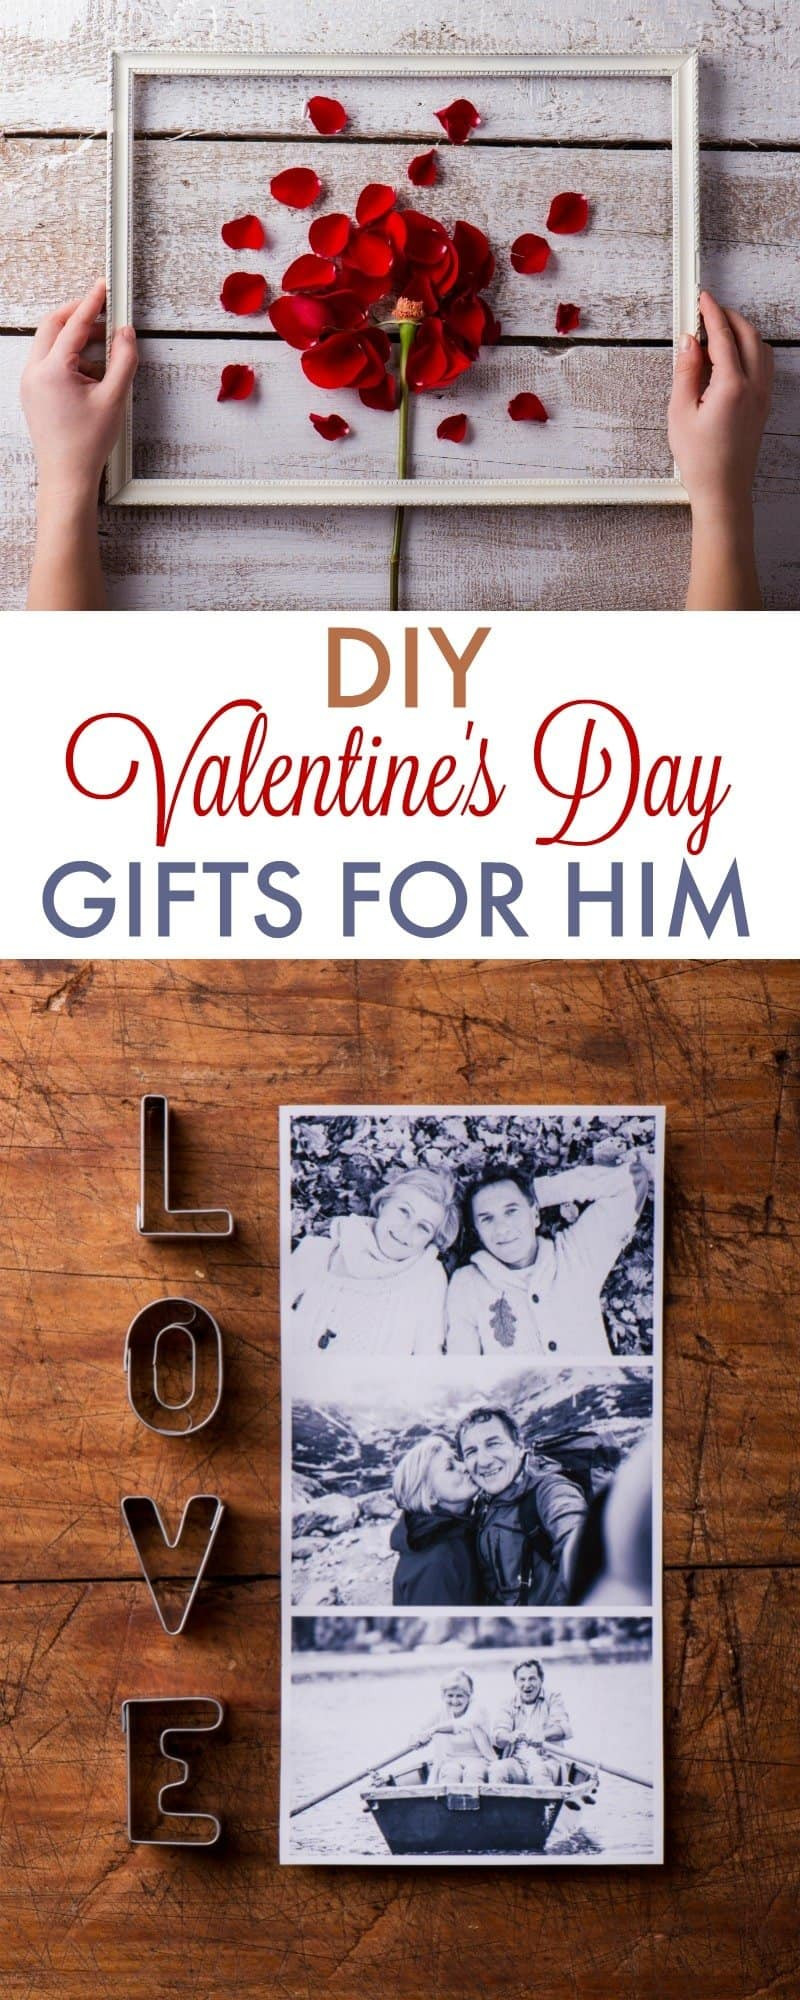 Best ideas about Boyfriend Gifts DIY
. Save or Pin DIY Valentine s Day Gifts for Boyfriend 730 Sage Street Now.